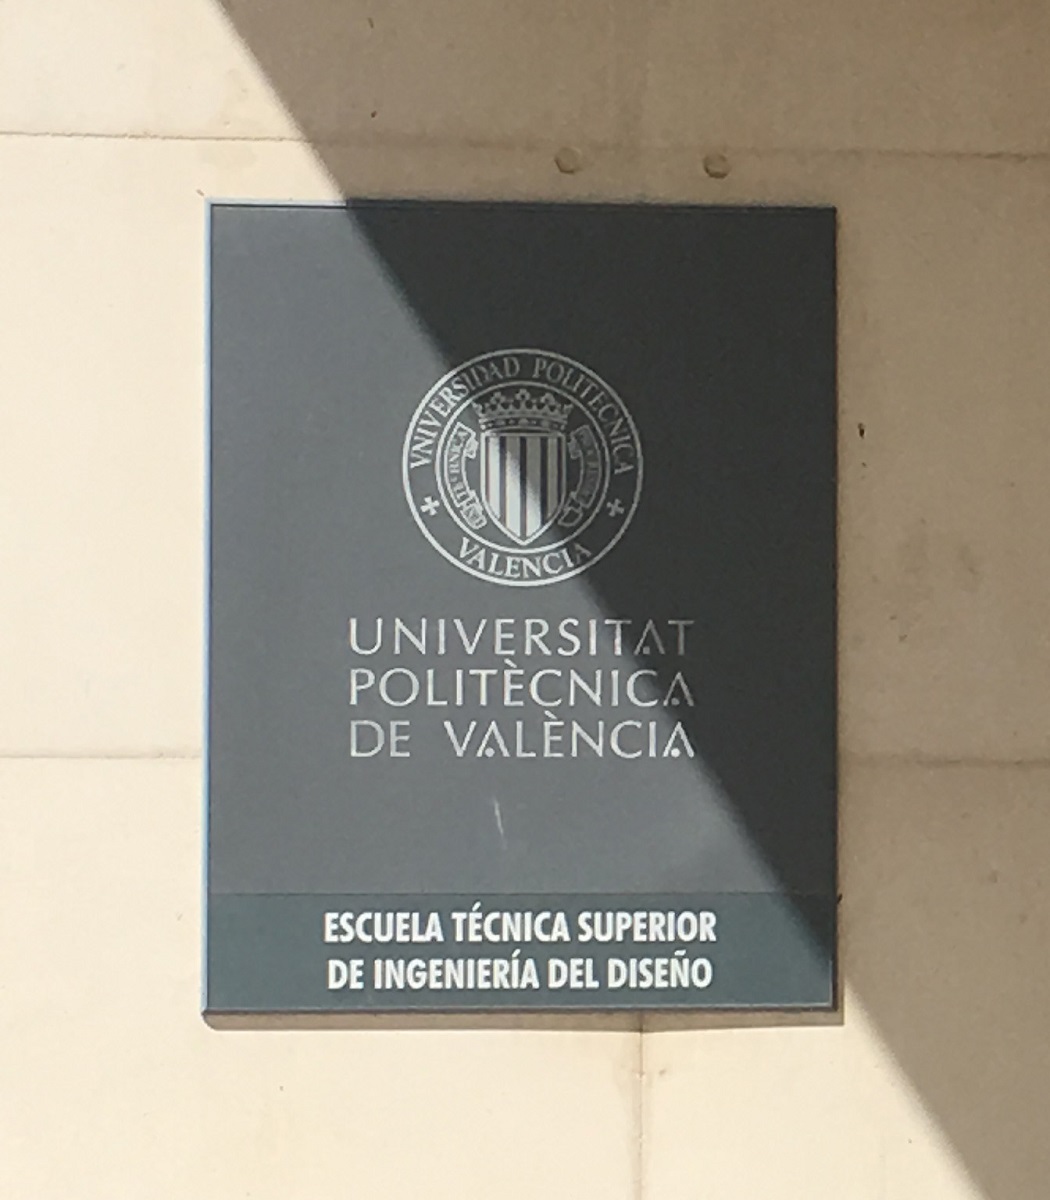 Политехнический университет Валенсии (Universitat Politecnica de Valencia (UPV))